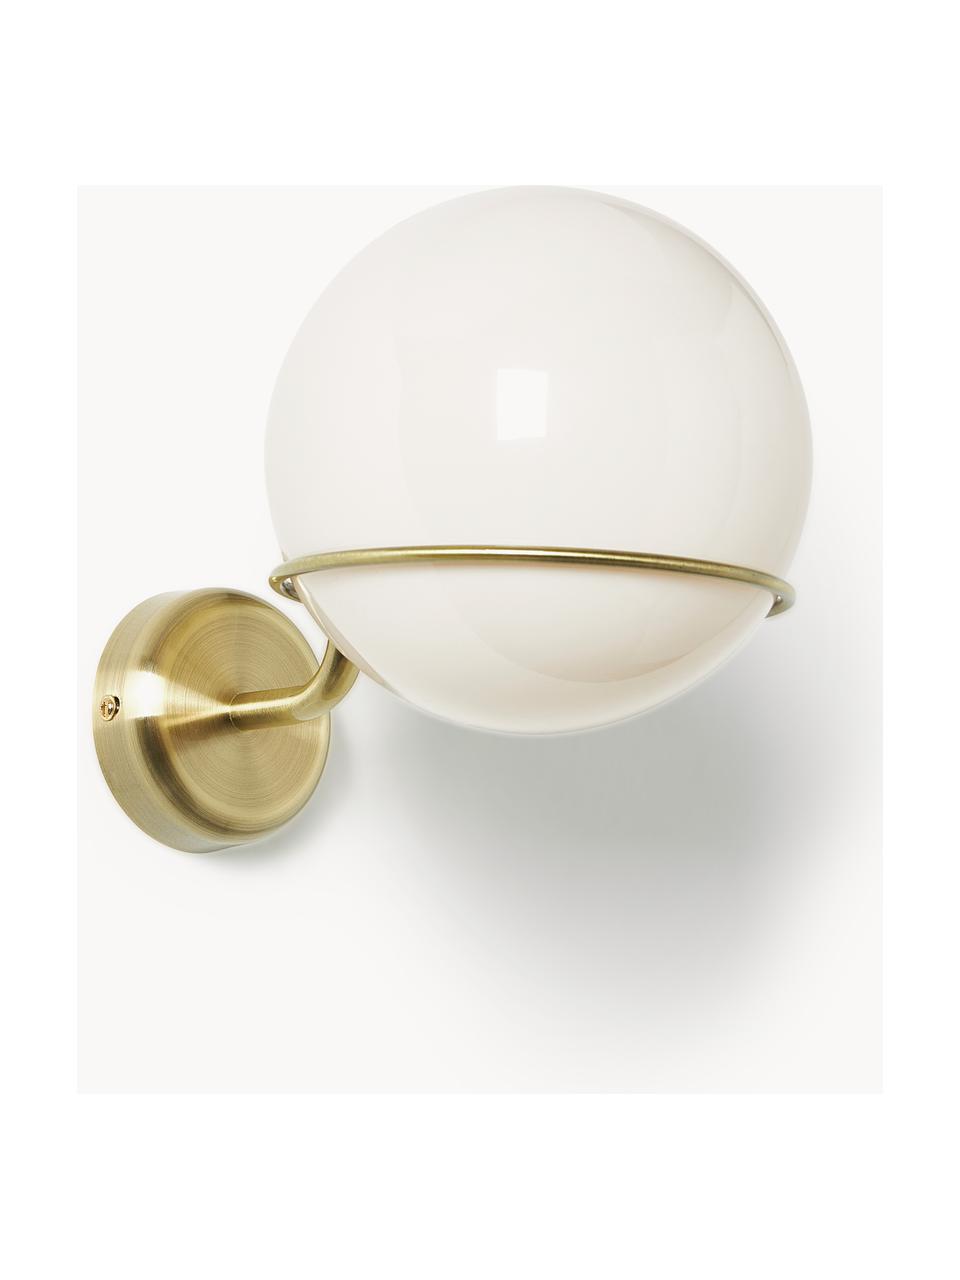 Applique con sfera di vetro Carey, Paralume: vetro, Struttura: metallo, Baldacchino: metallo, Bianco crema, dorato, Ø 16 x Alt. 18 cm